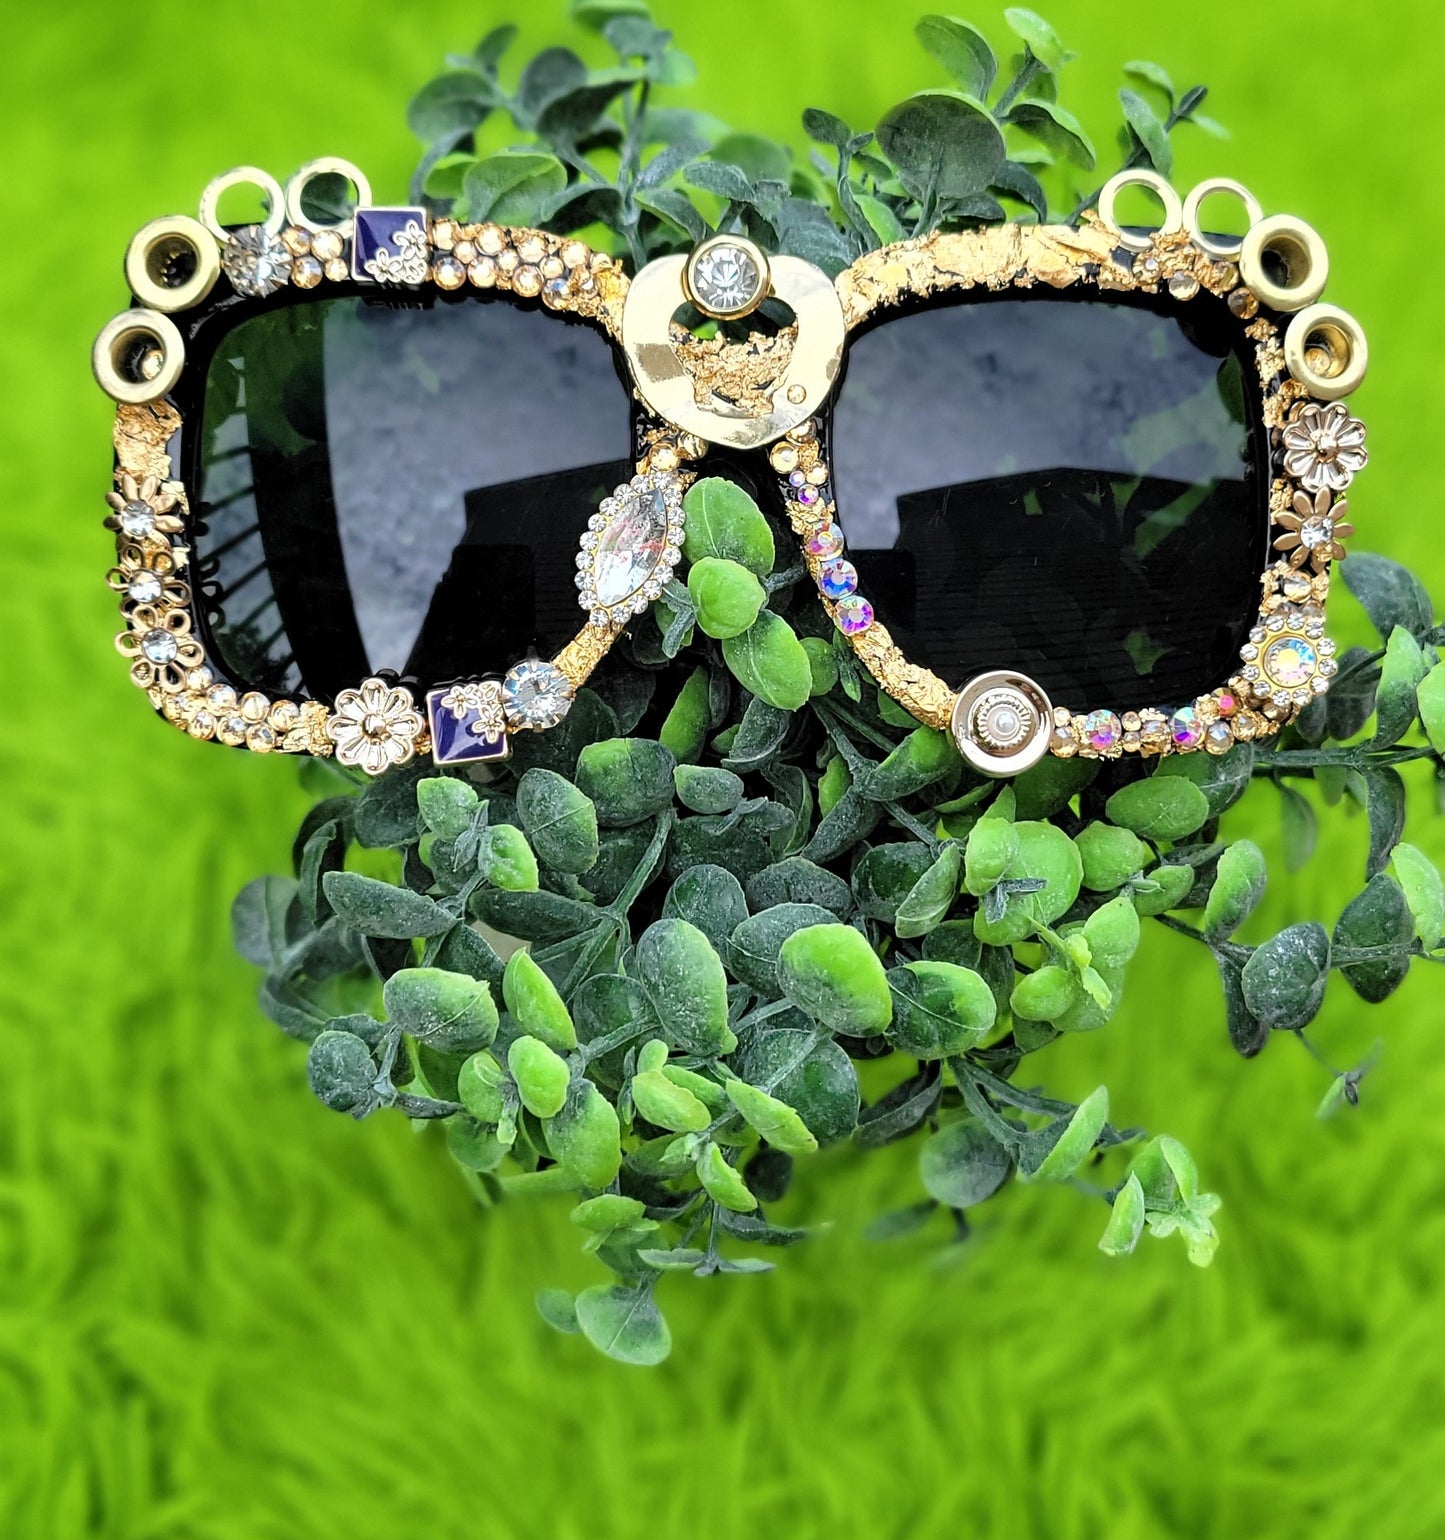 "Badazzled Sunglasses – Polarized UV Protection for Women and Men's Designer Fashion Eyewear"